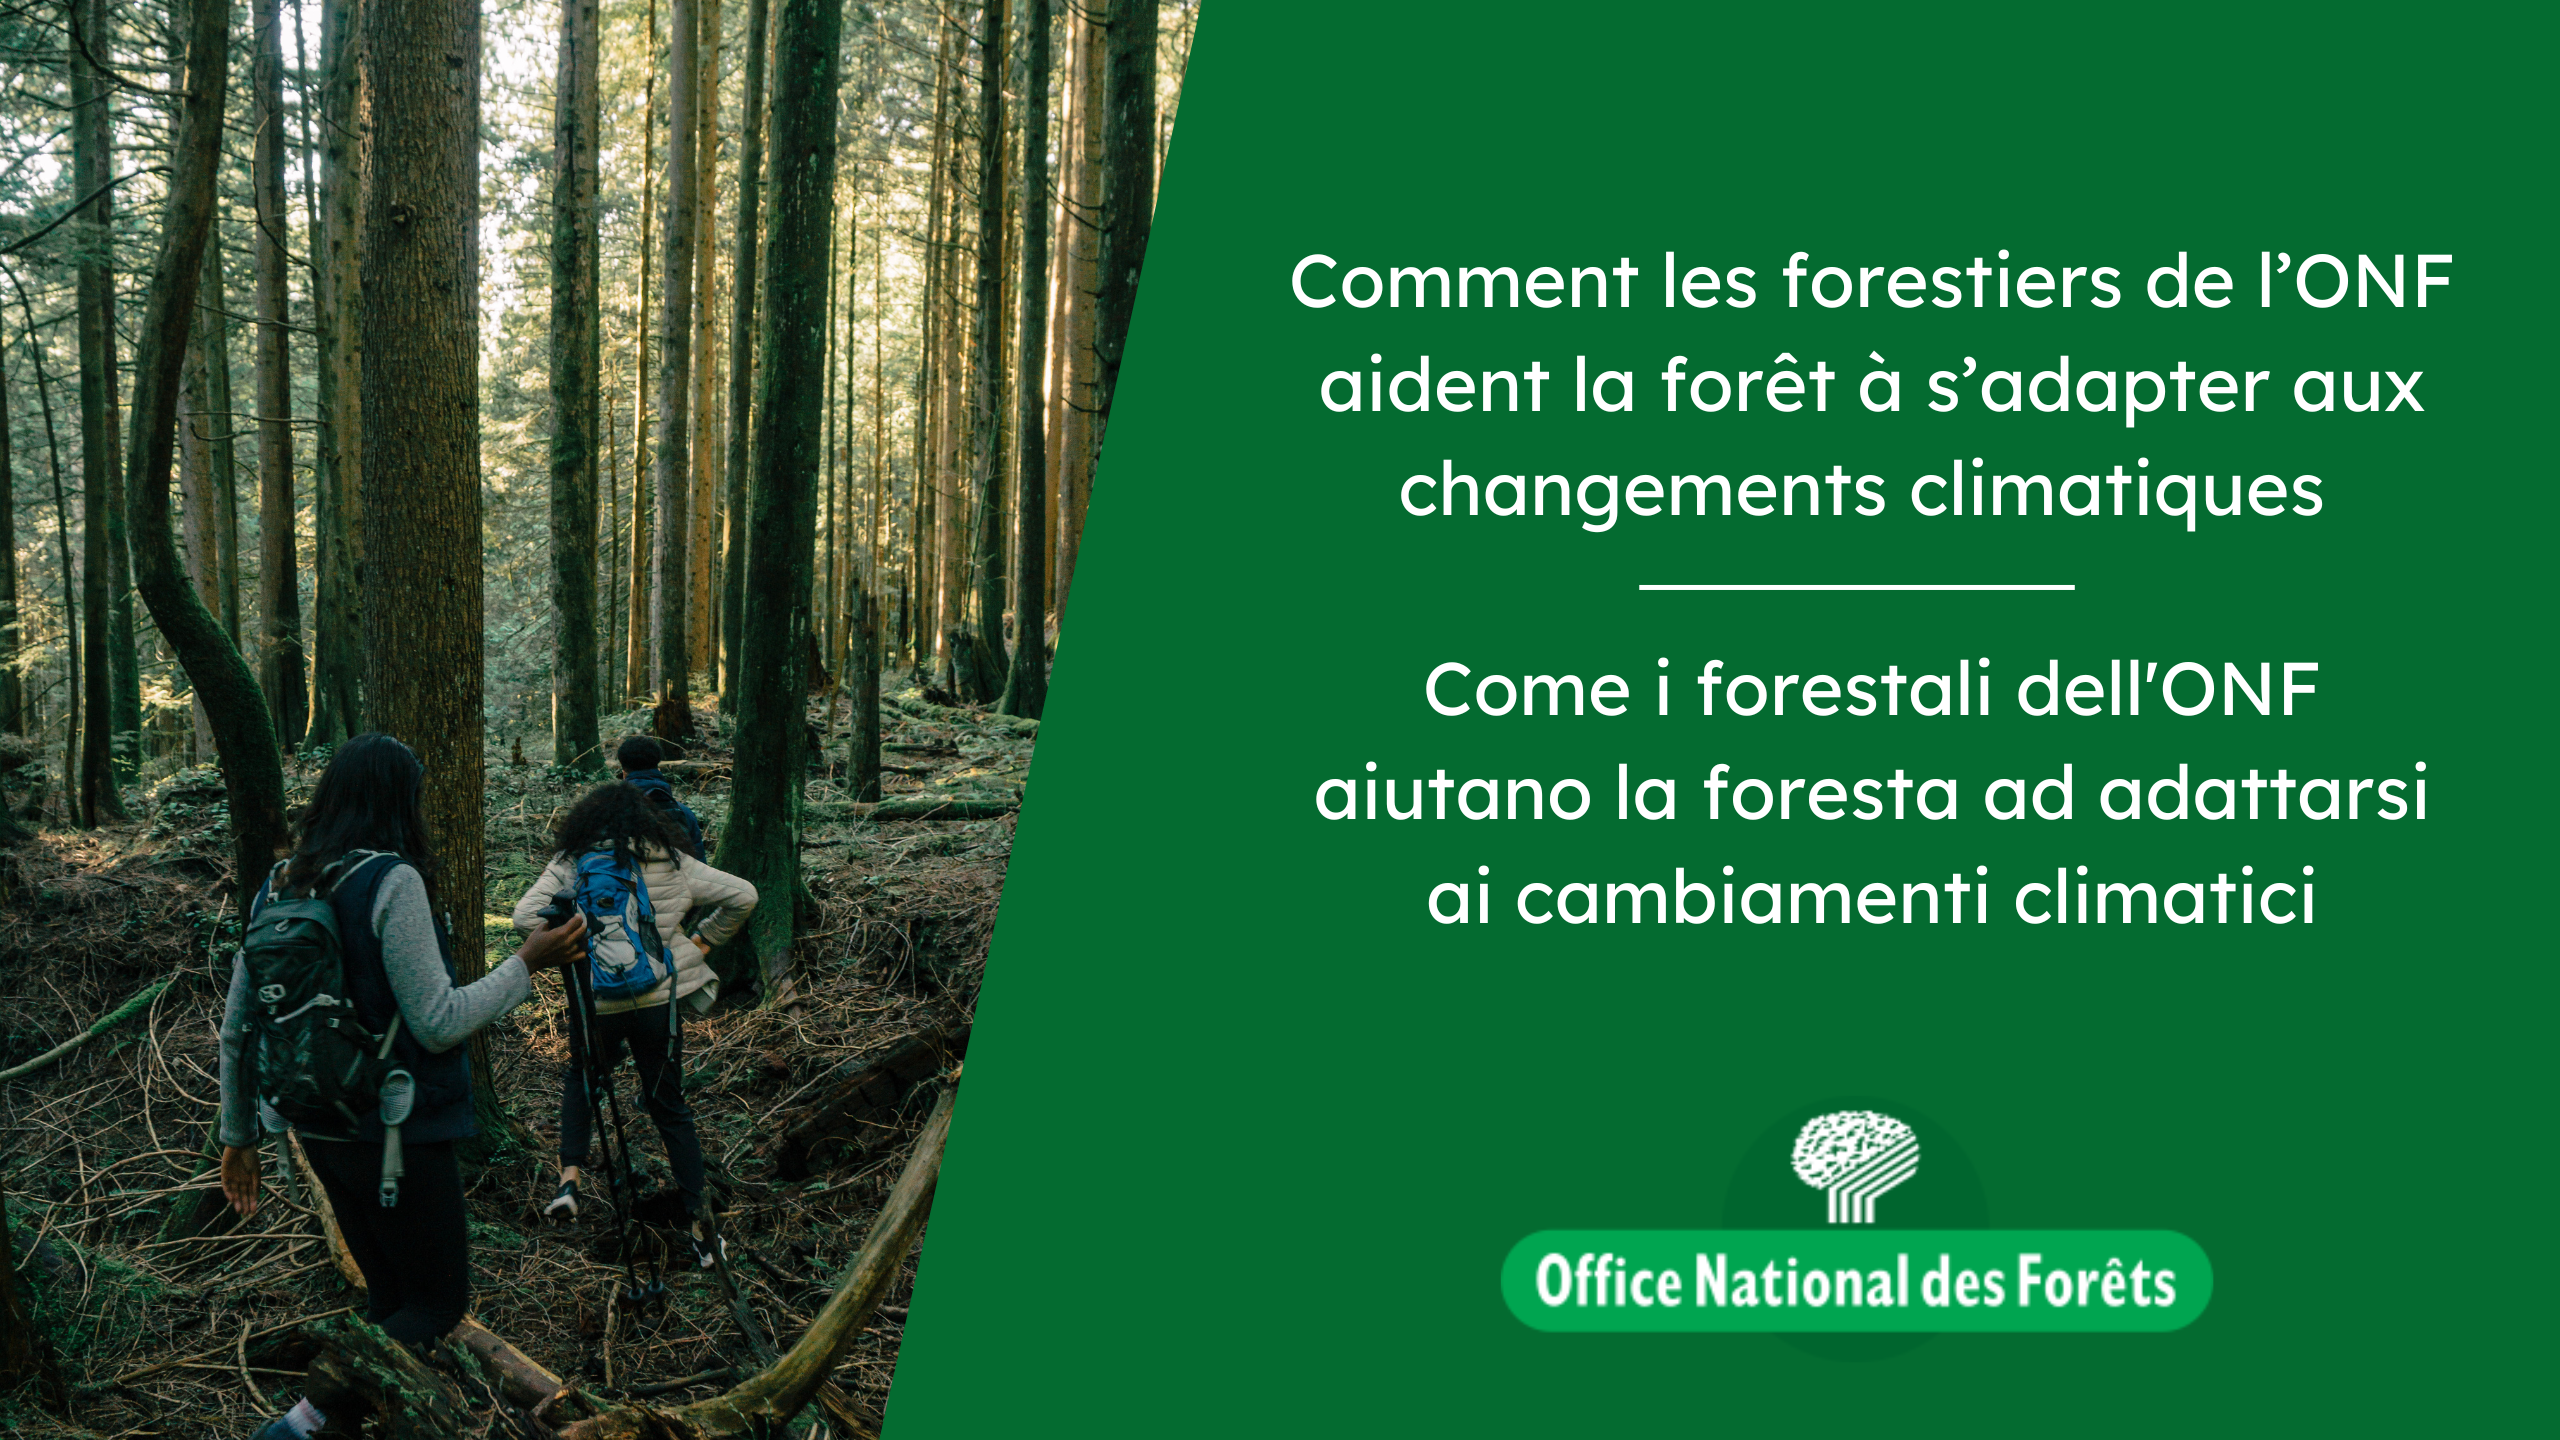 Come i forestali dell’ONF aiutano la foresta ad adattarsi ai cambimenti climatici